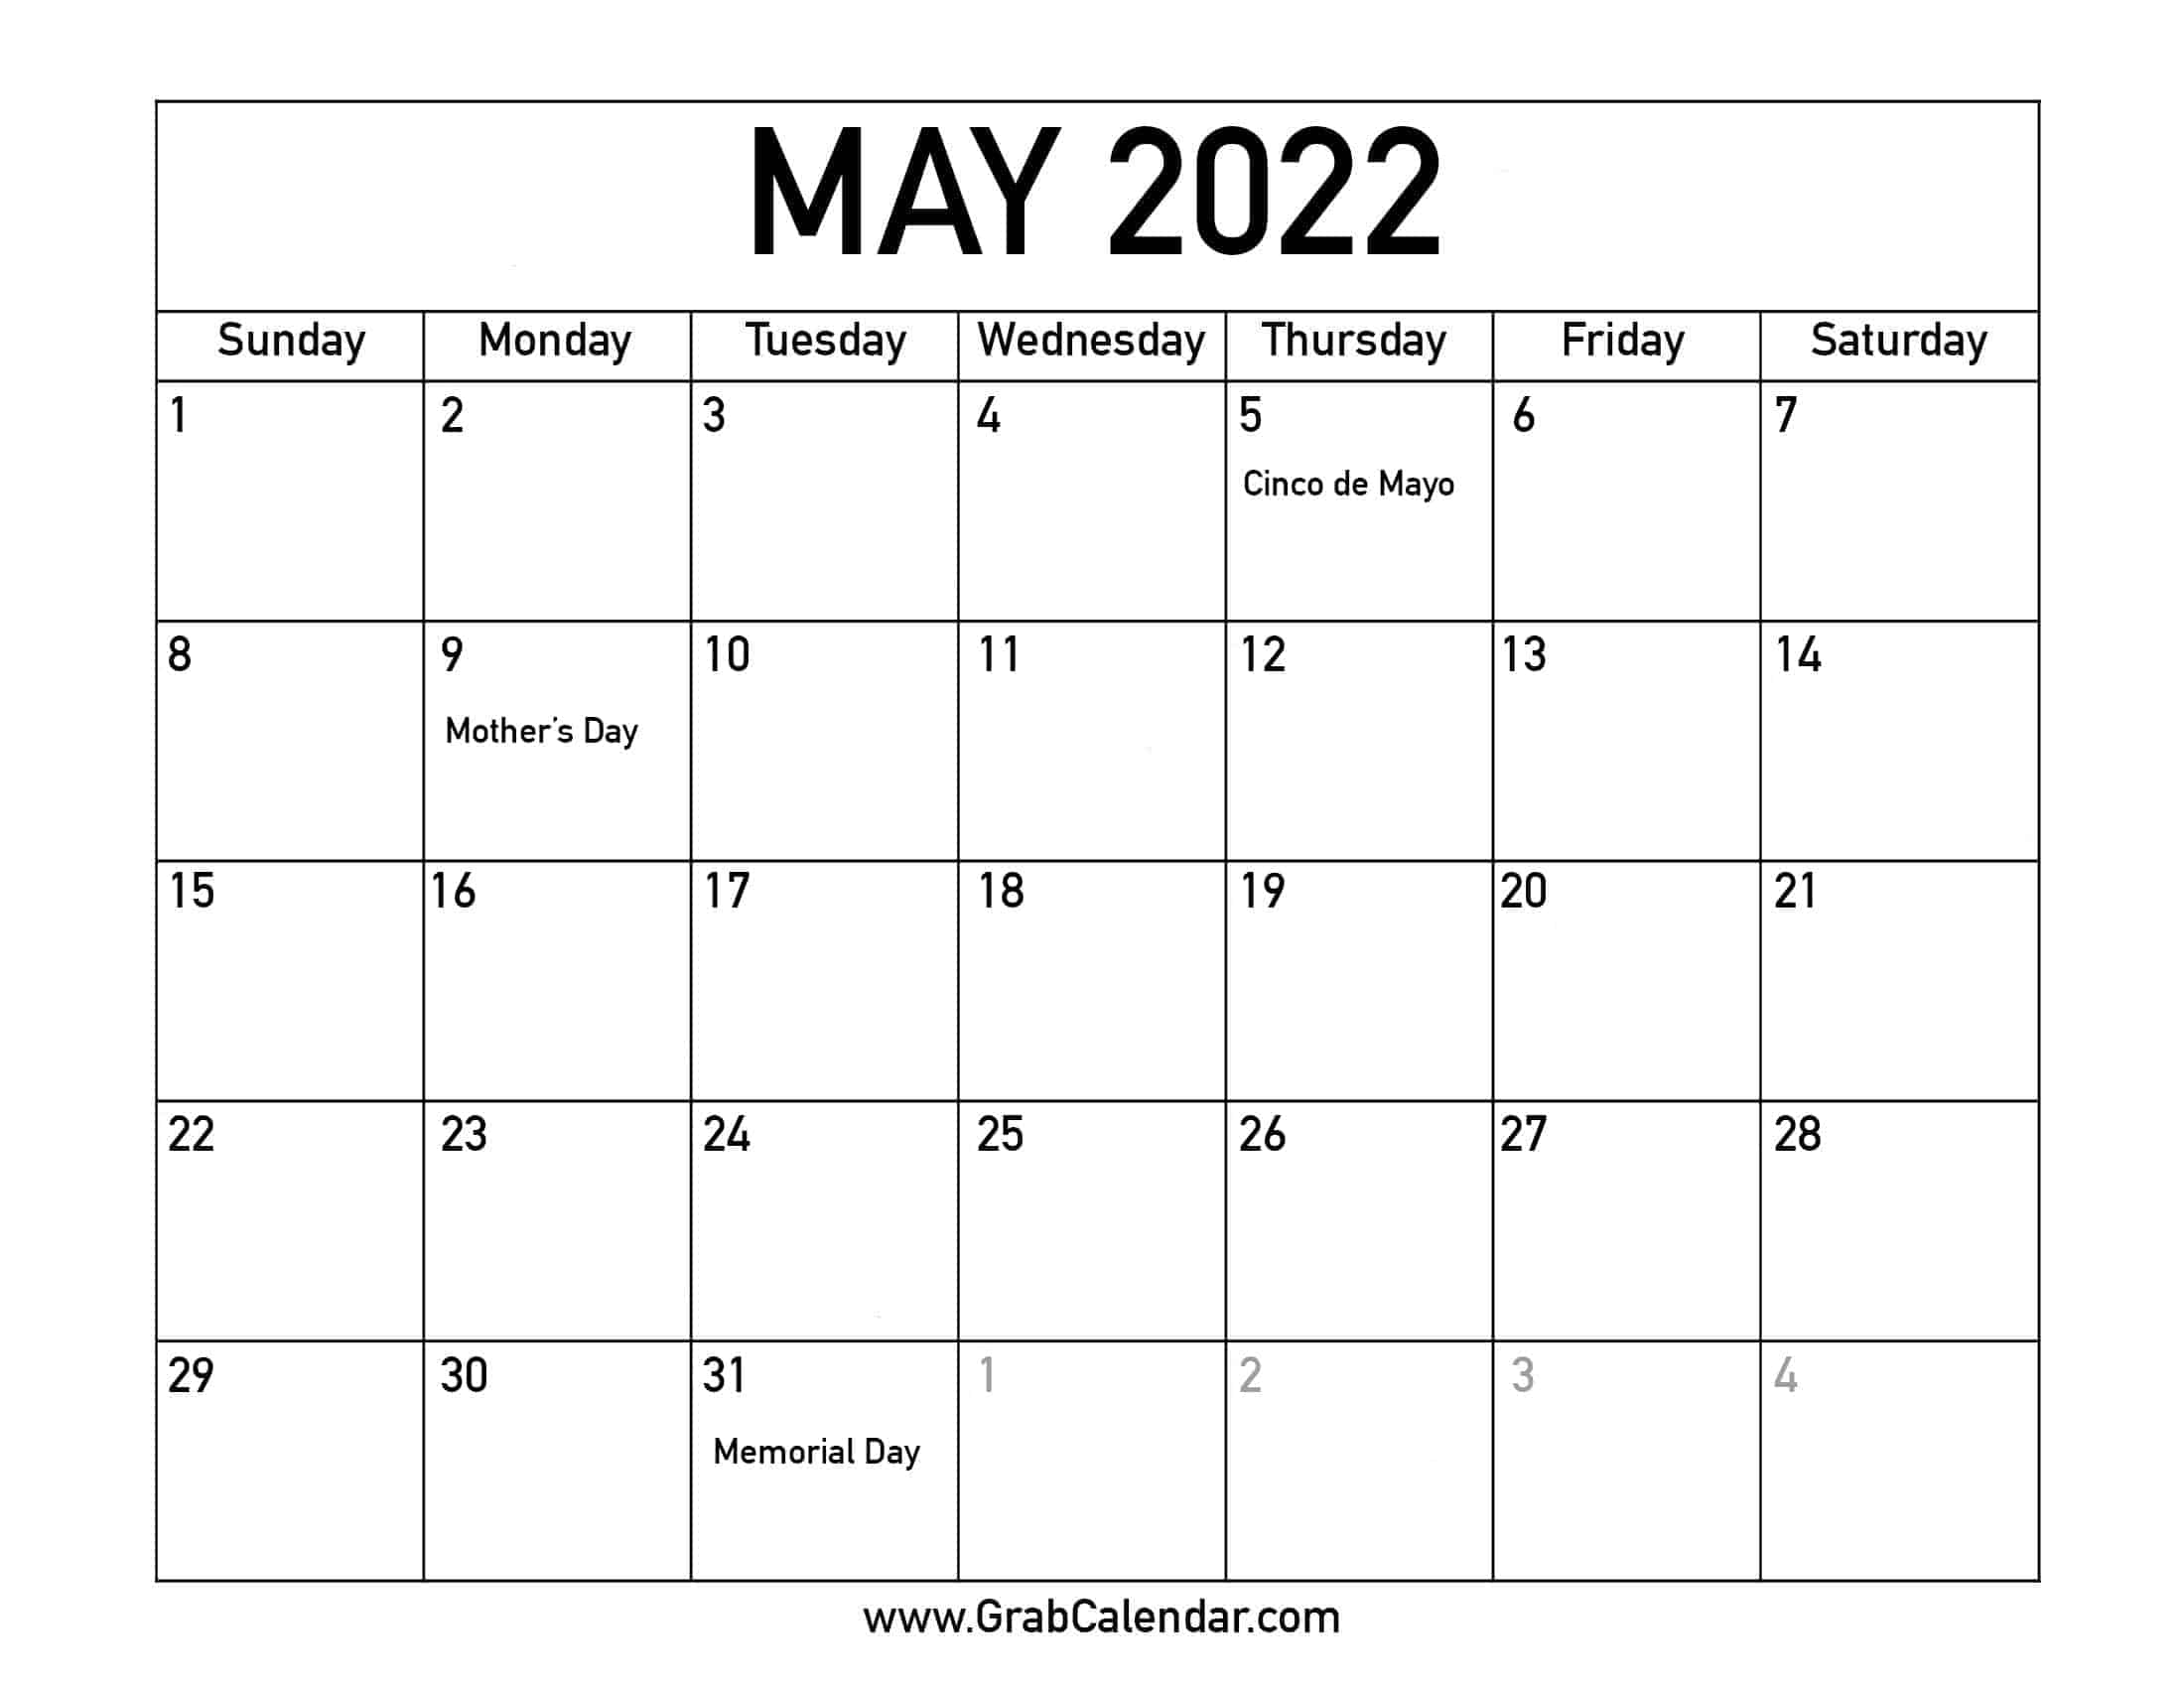 May 2022 Calendar With Holidays Printable Printable May 2022 Calendar